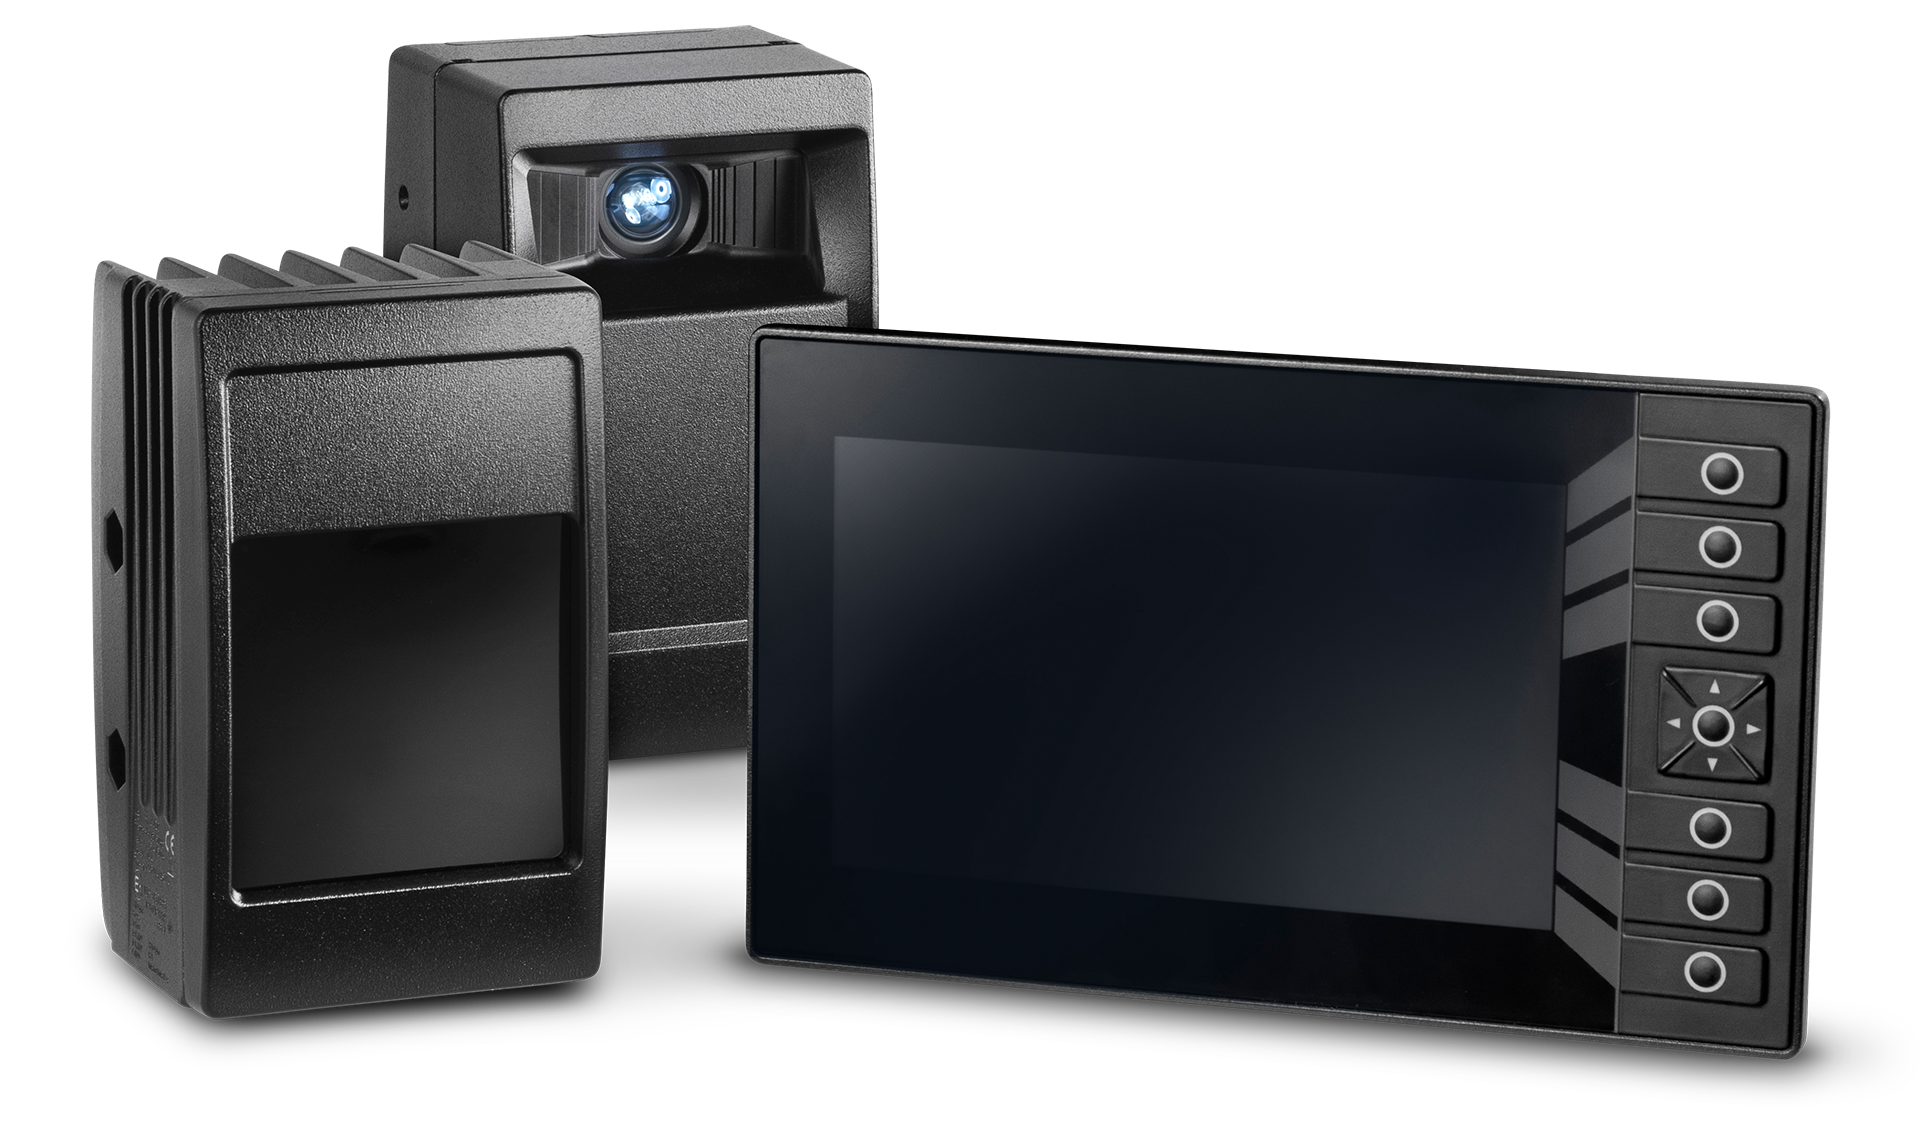 Das ViSy RAS 2.0 besteht aus einer Beleuchtungseinheit, einem 3D-Sensor sowie einem Touchscreen Monitor und senkt das Risio beim Rückwärtsfahren mit Nutzfahrzeugen.